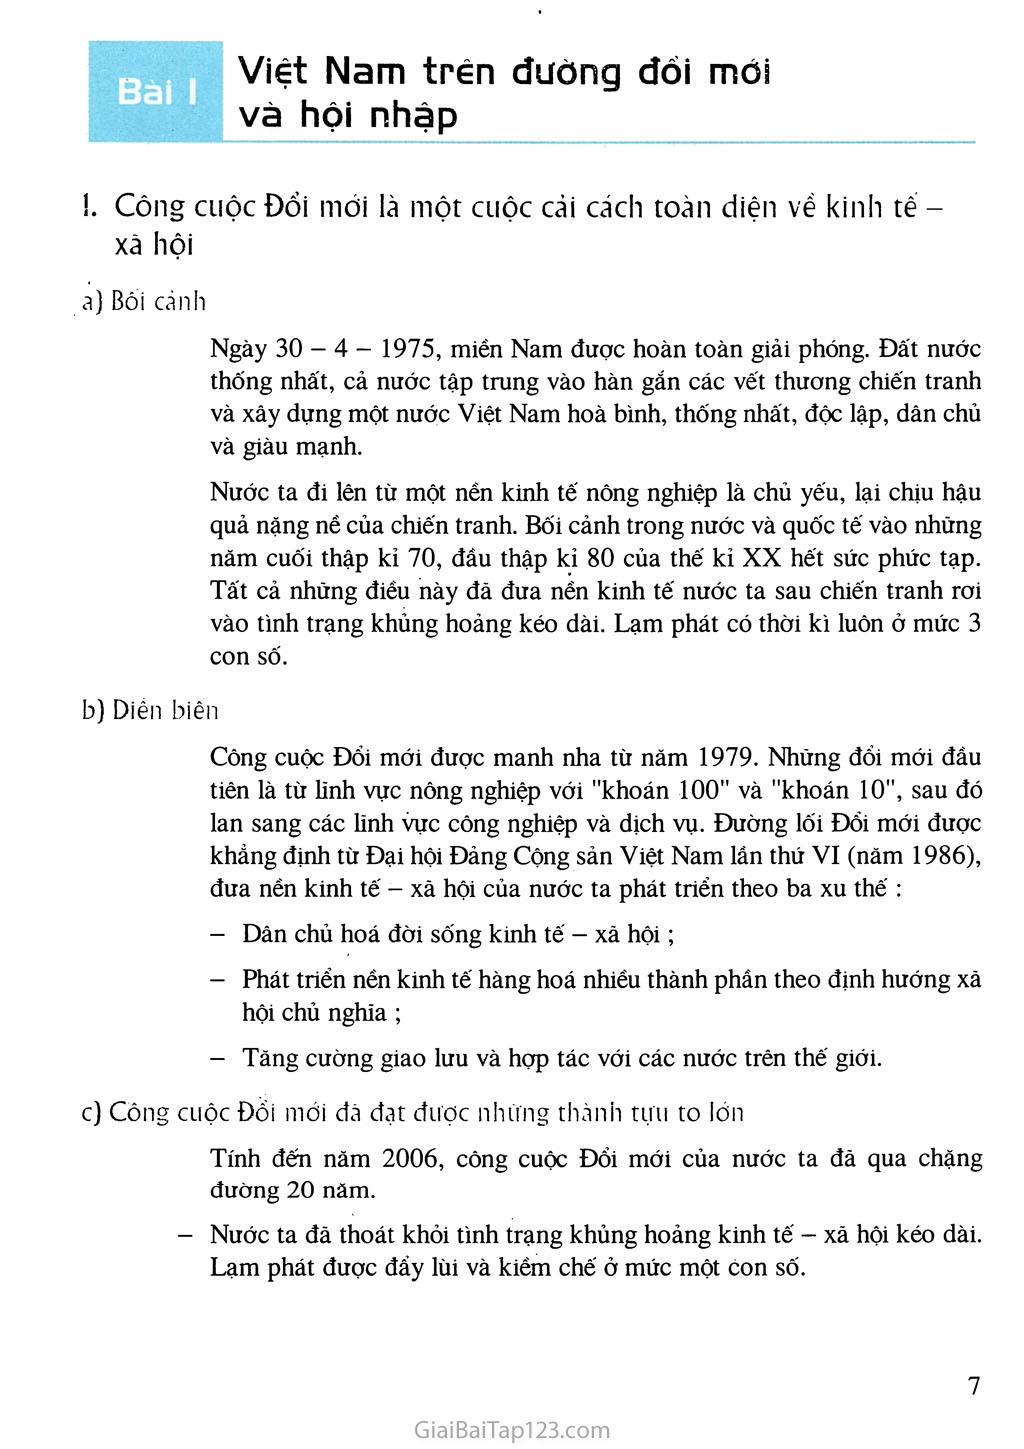 Bài 1. Việt Nam trên đường đổi mới và hội nhập trang 1